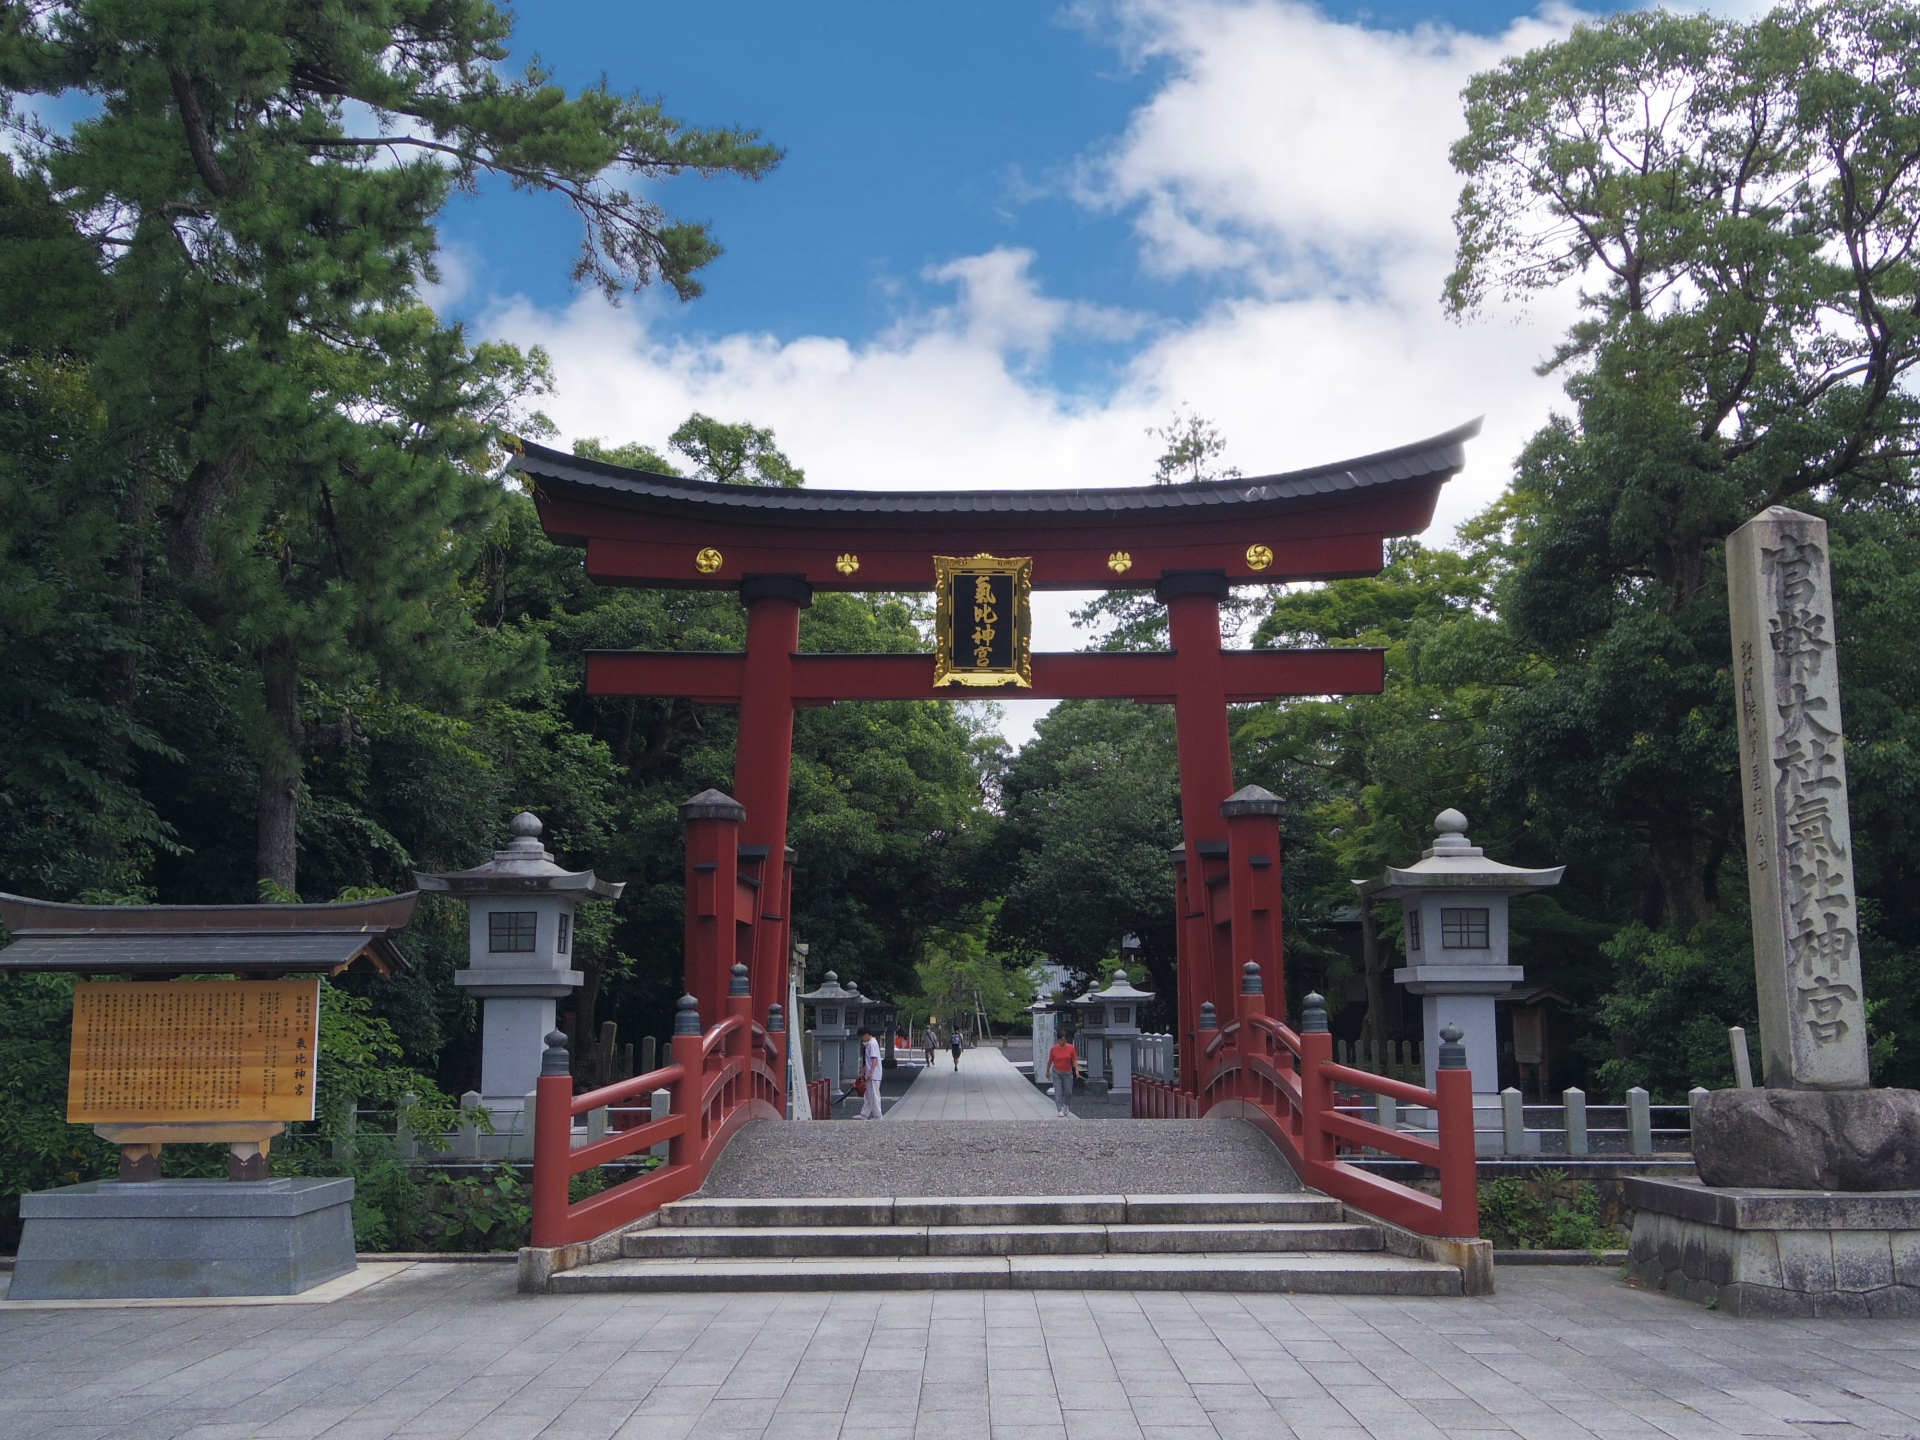 福井県敦賀市の「氣比神宮」。重要文化財・日本三大木造大鳥居のひとつです